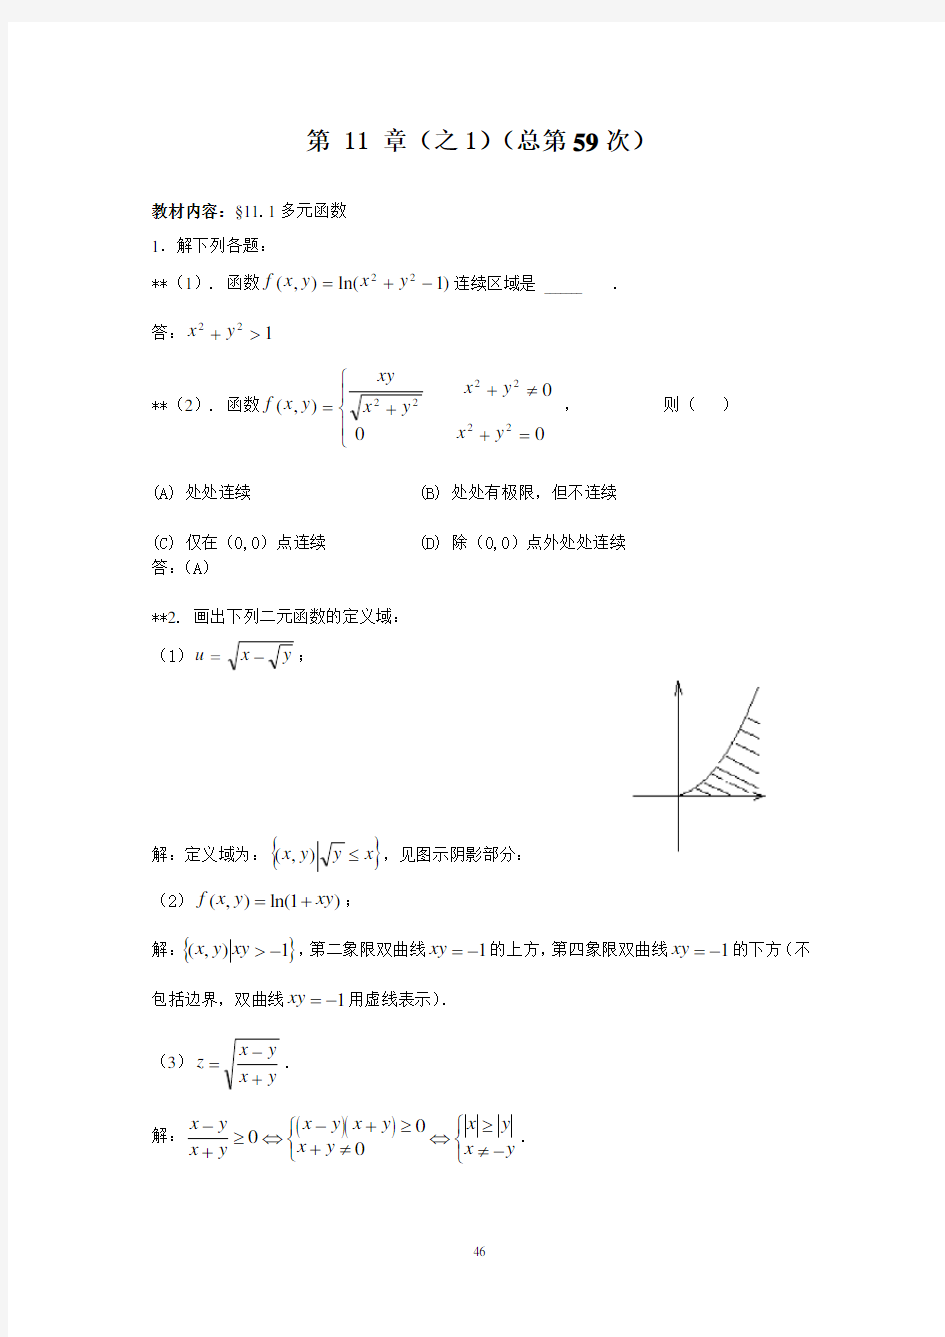 (完整版)华东理工大学高等数学(下册)第11章作业答案